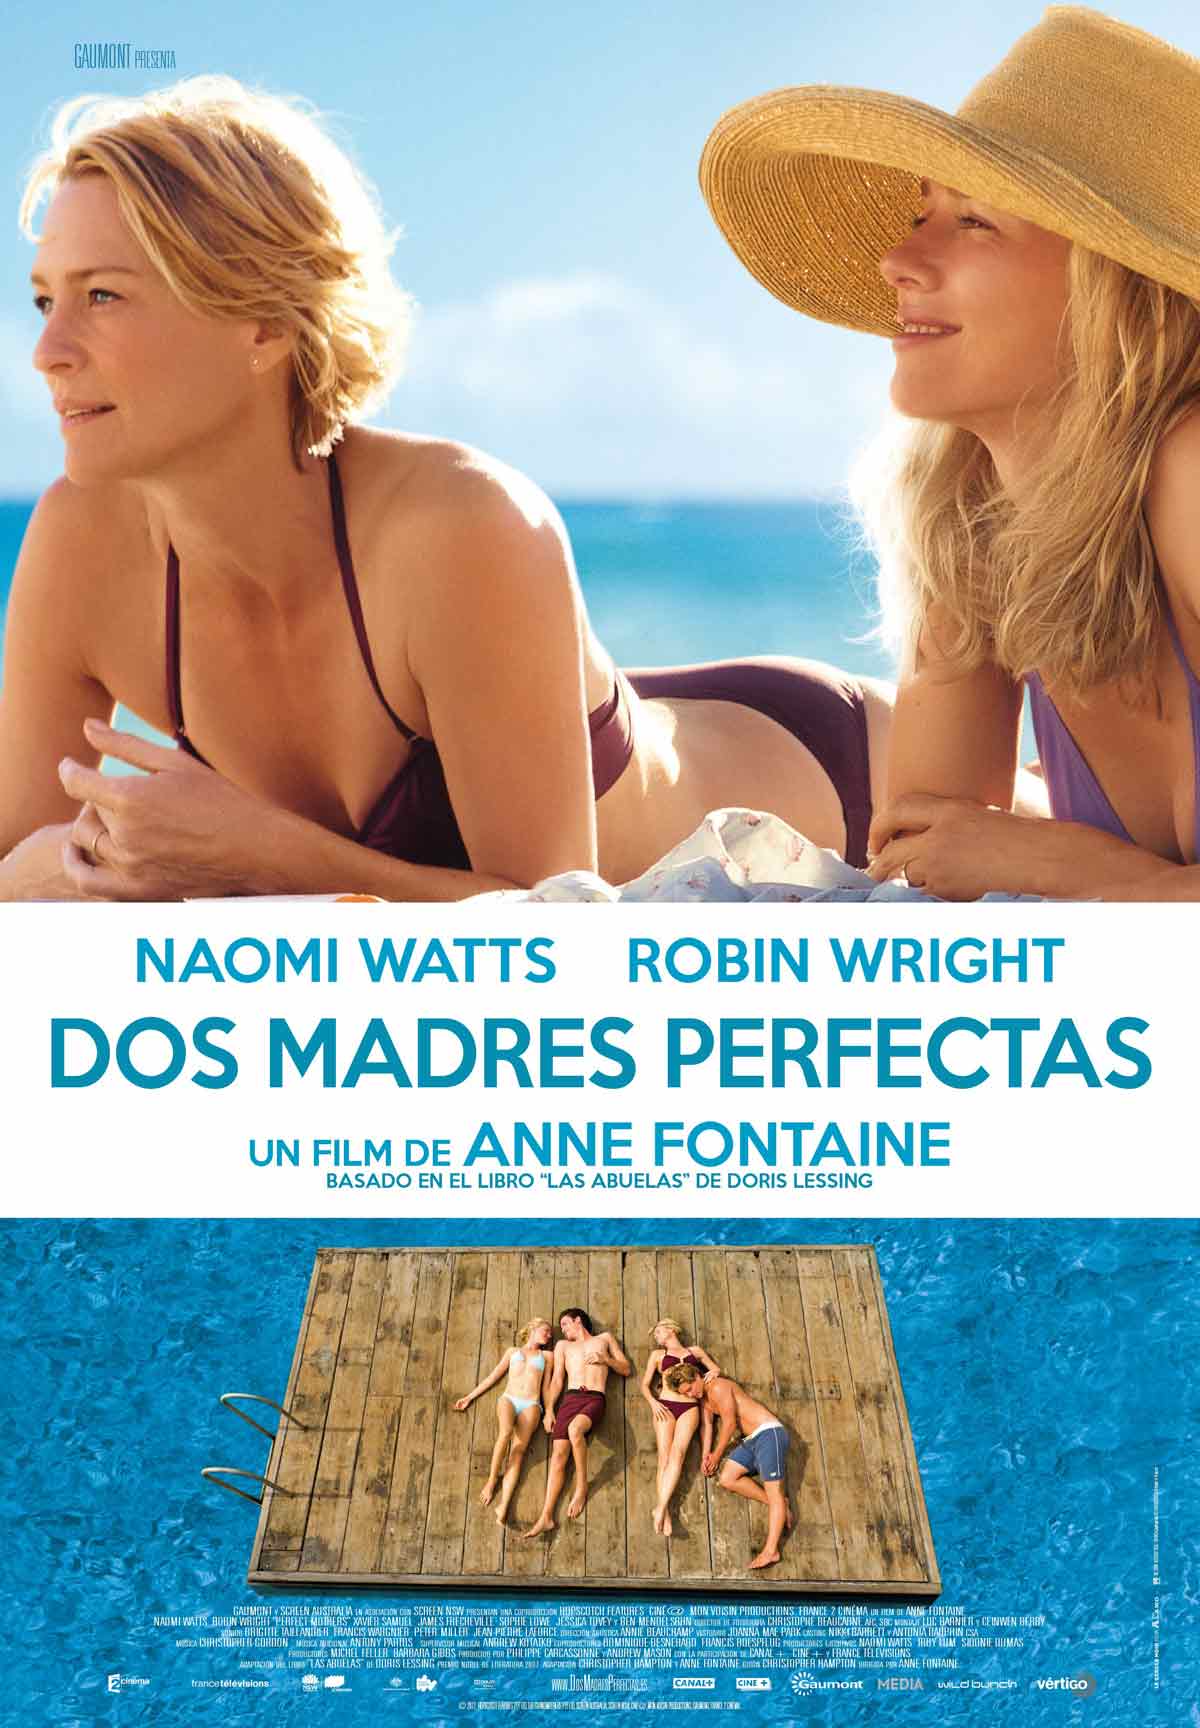 Incident, evenement punt Moeras Dos madres perfectas - Película 2013 - SensaCine.com